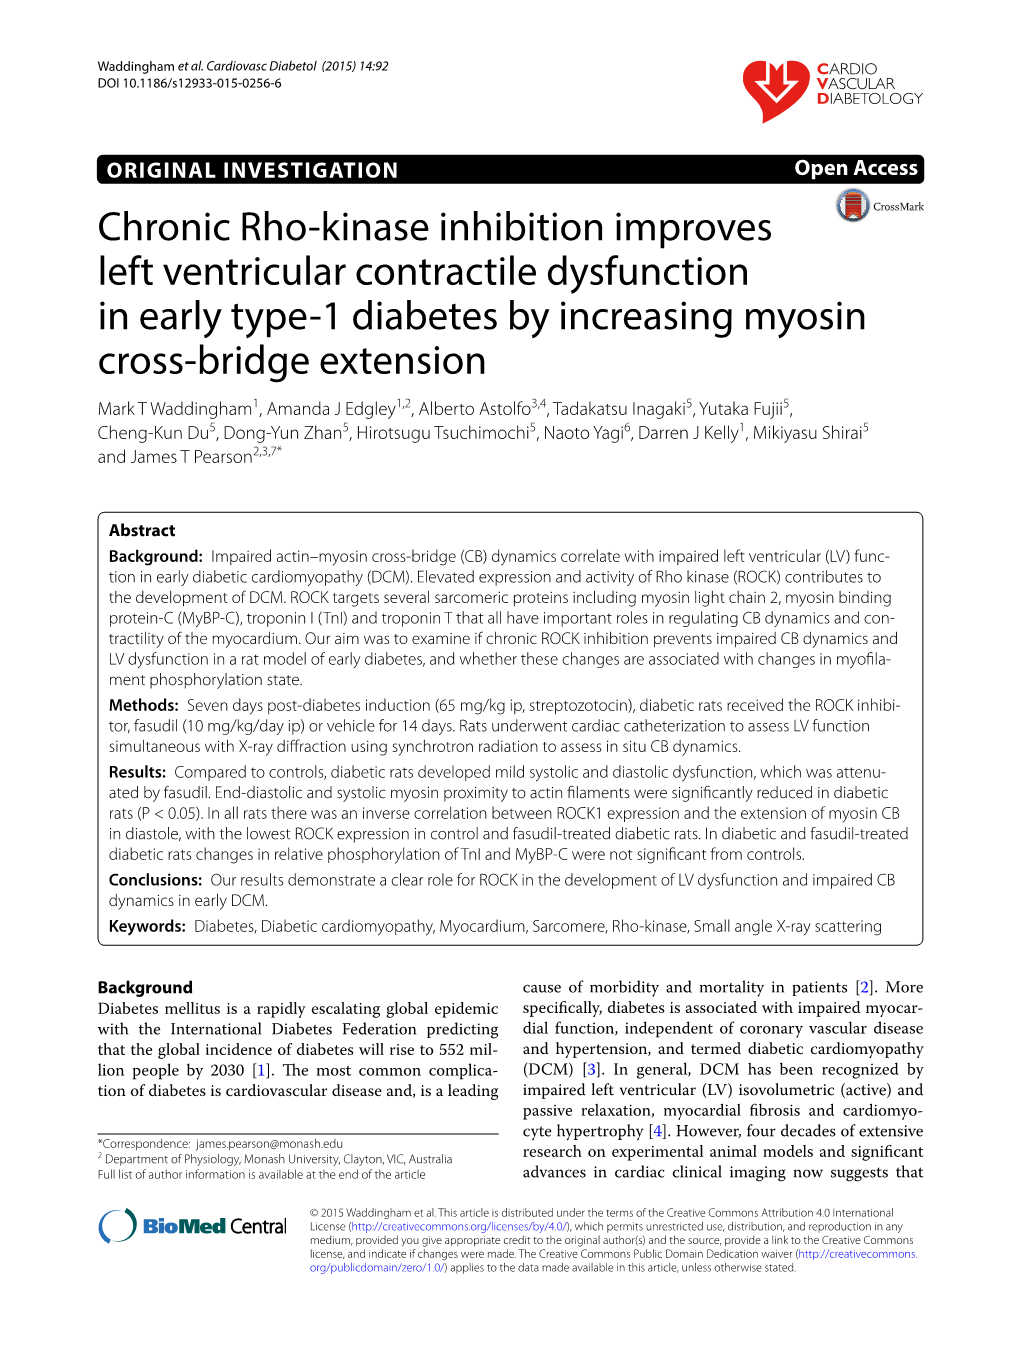 Chronic Rho-Kinase Inhibition Improves Left